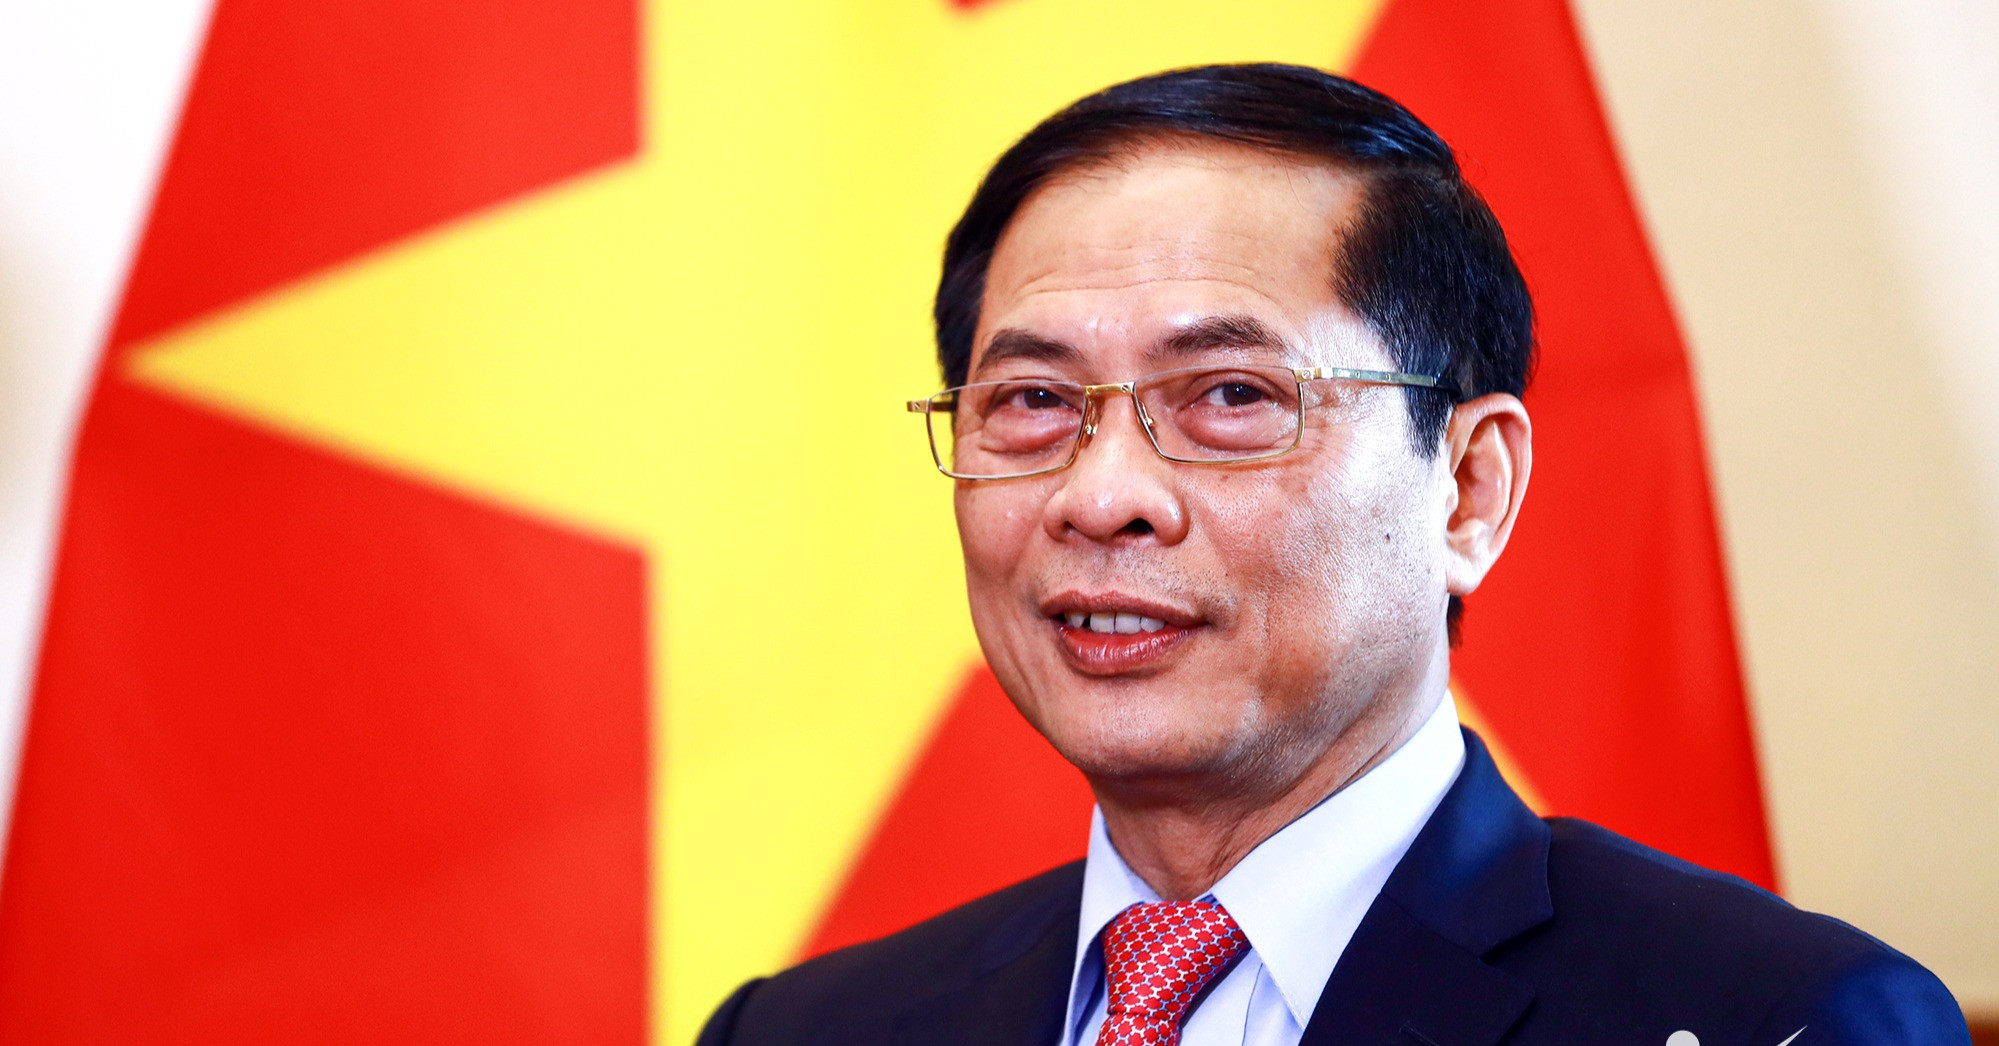 Bộ trưởng Bùi Thanh Sơn gửi thư chúc Tết Nguyên đán tới cán bộ ngành Ngoại giao